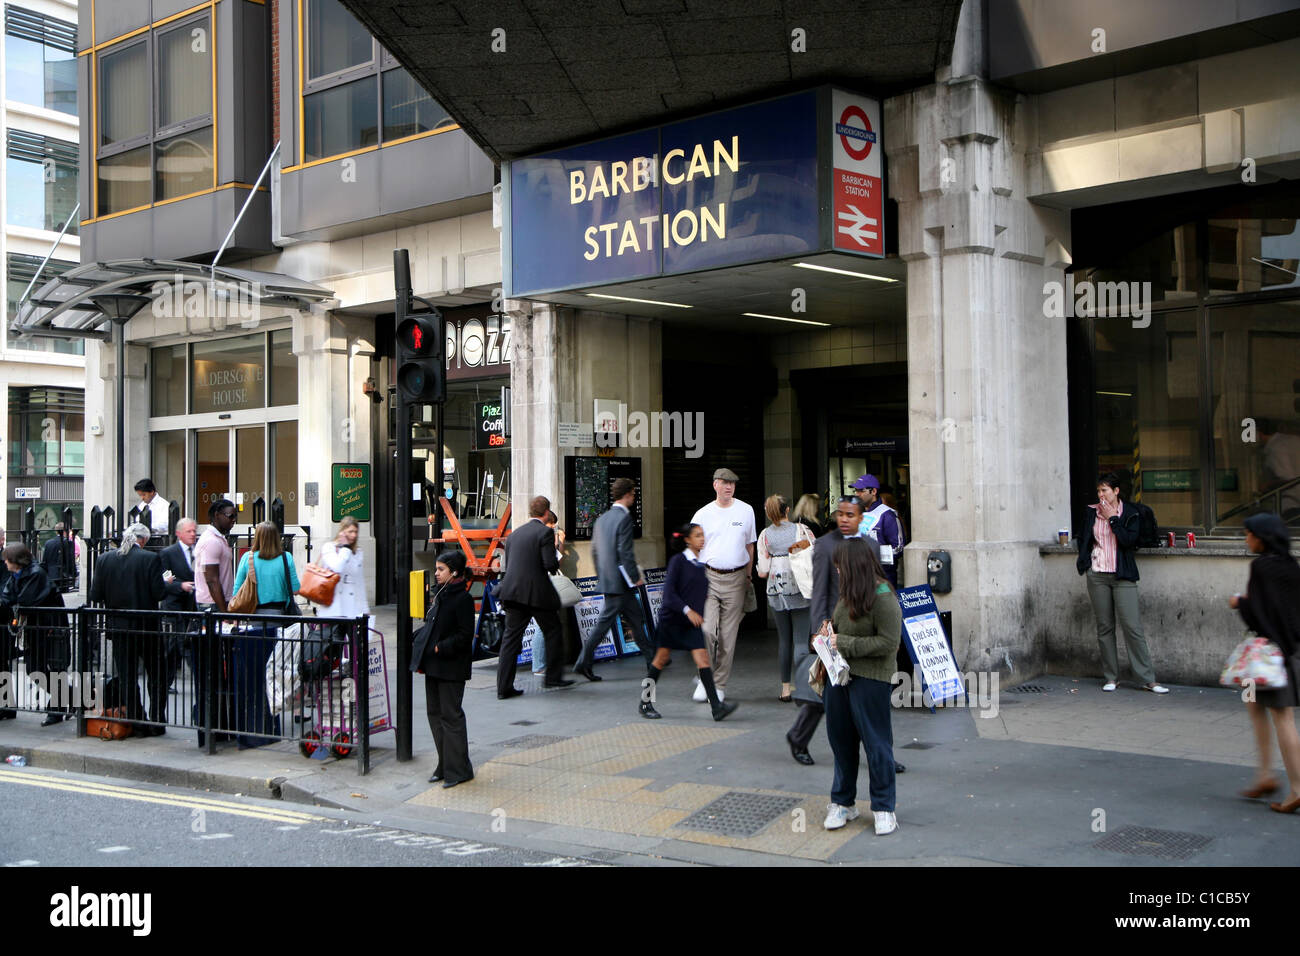 Allgemeine Ansicht Gv Barbican u-Bahnstation im Barbican, London, England. Stockfoto